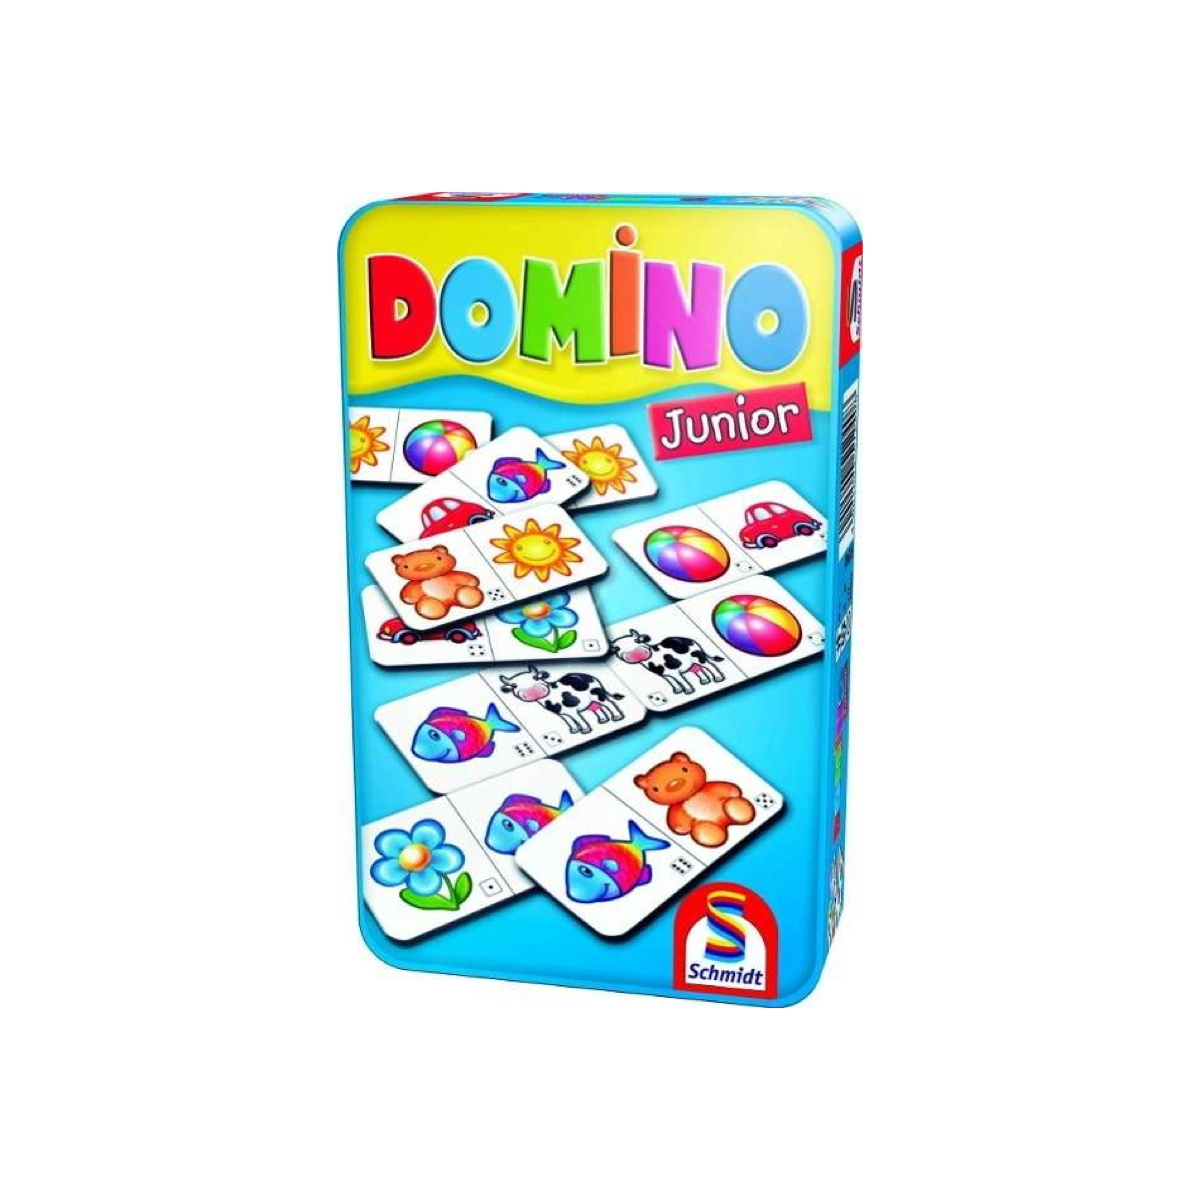 Domino Junior SPIELE Metalldose Bring-Mich-Mit-Spiel - SCHMIDT Gesellschaftsspiel in